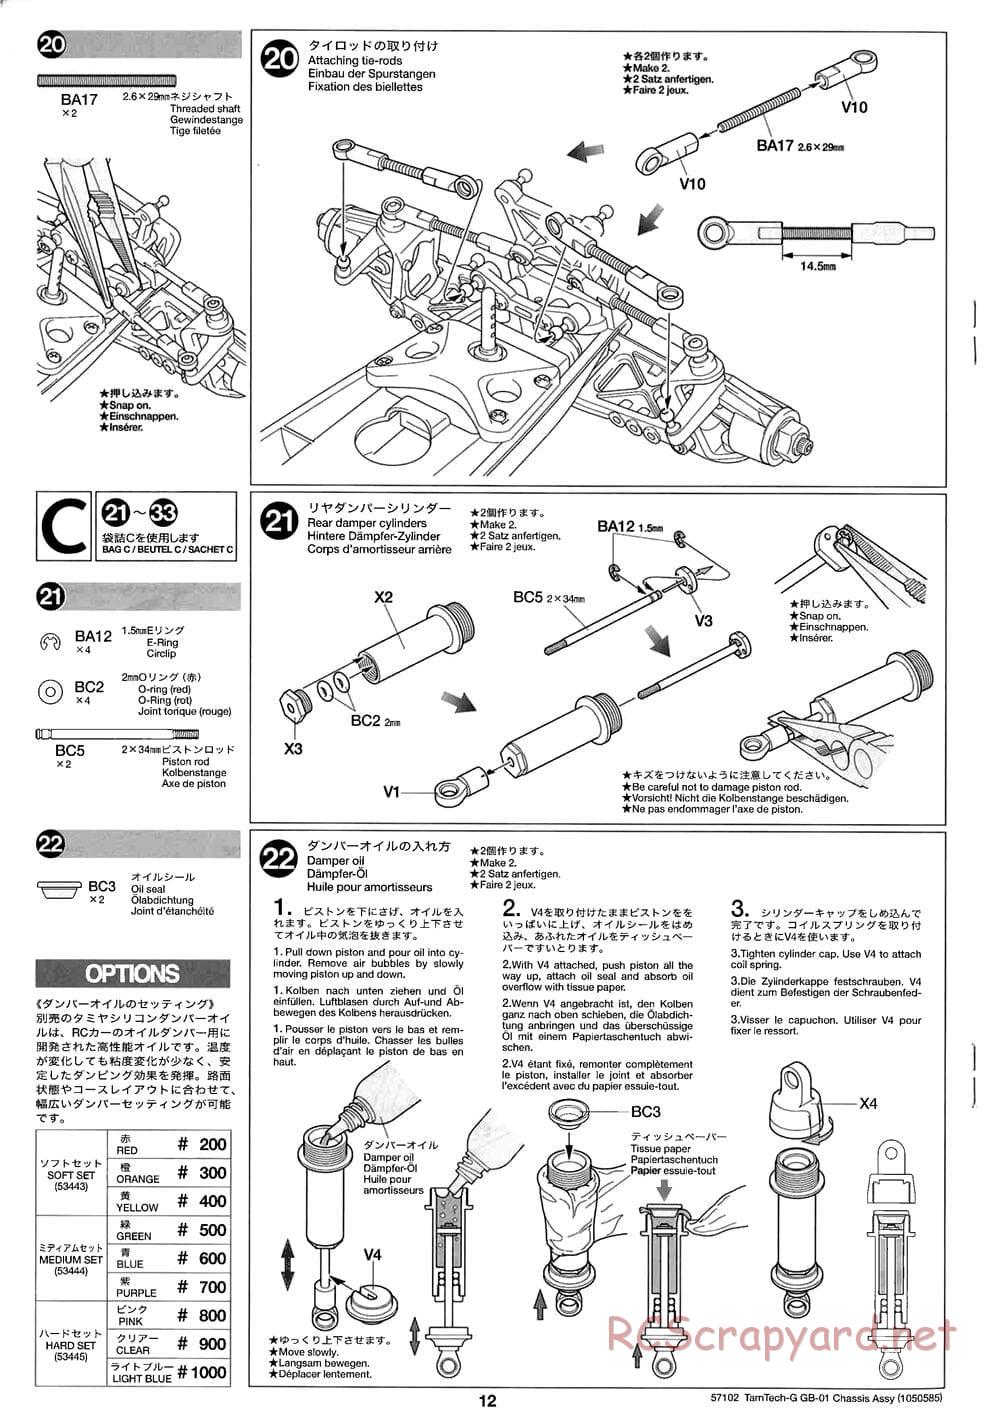 Tamiya - GB-01 Chassis - Manual - Page 12